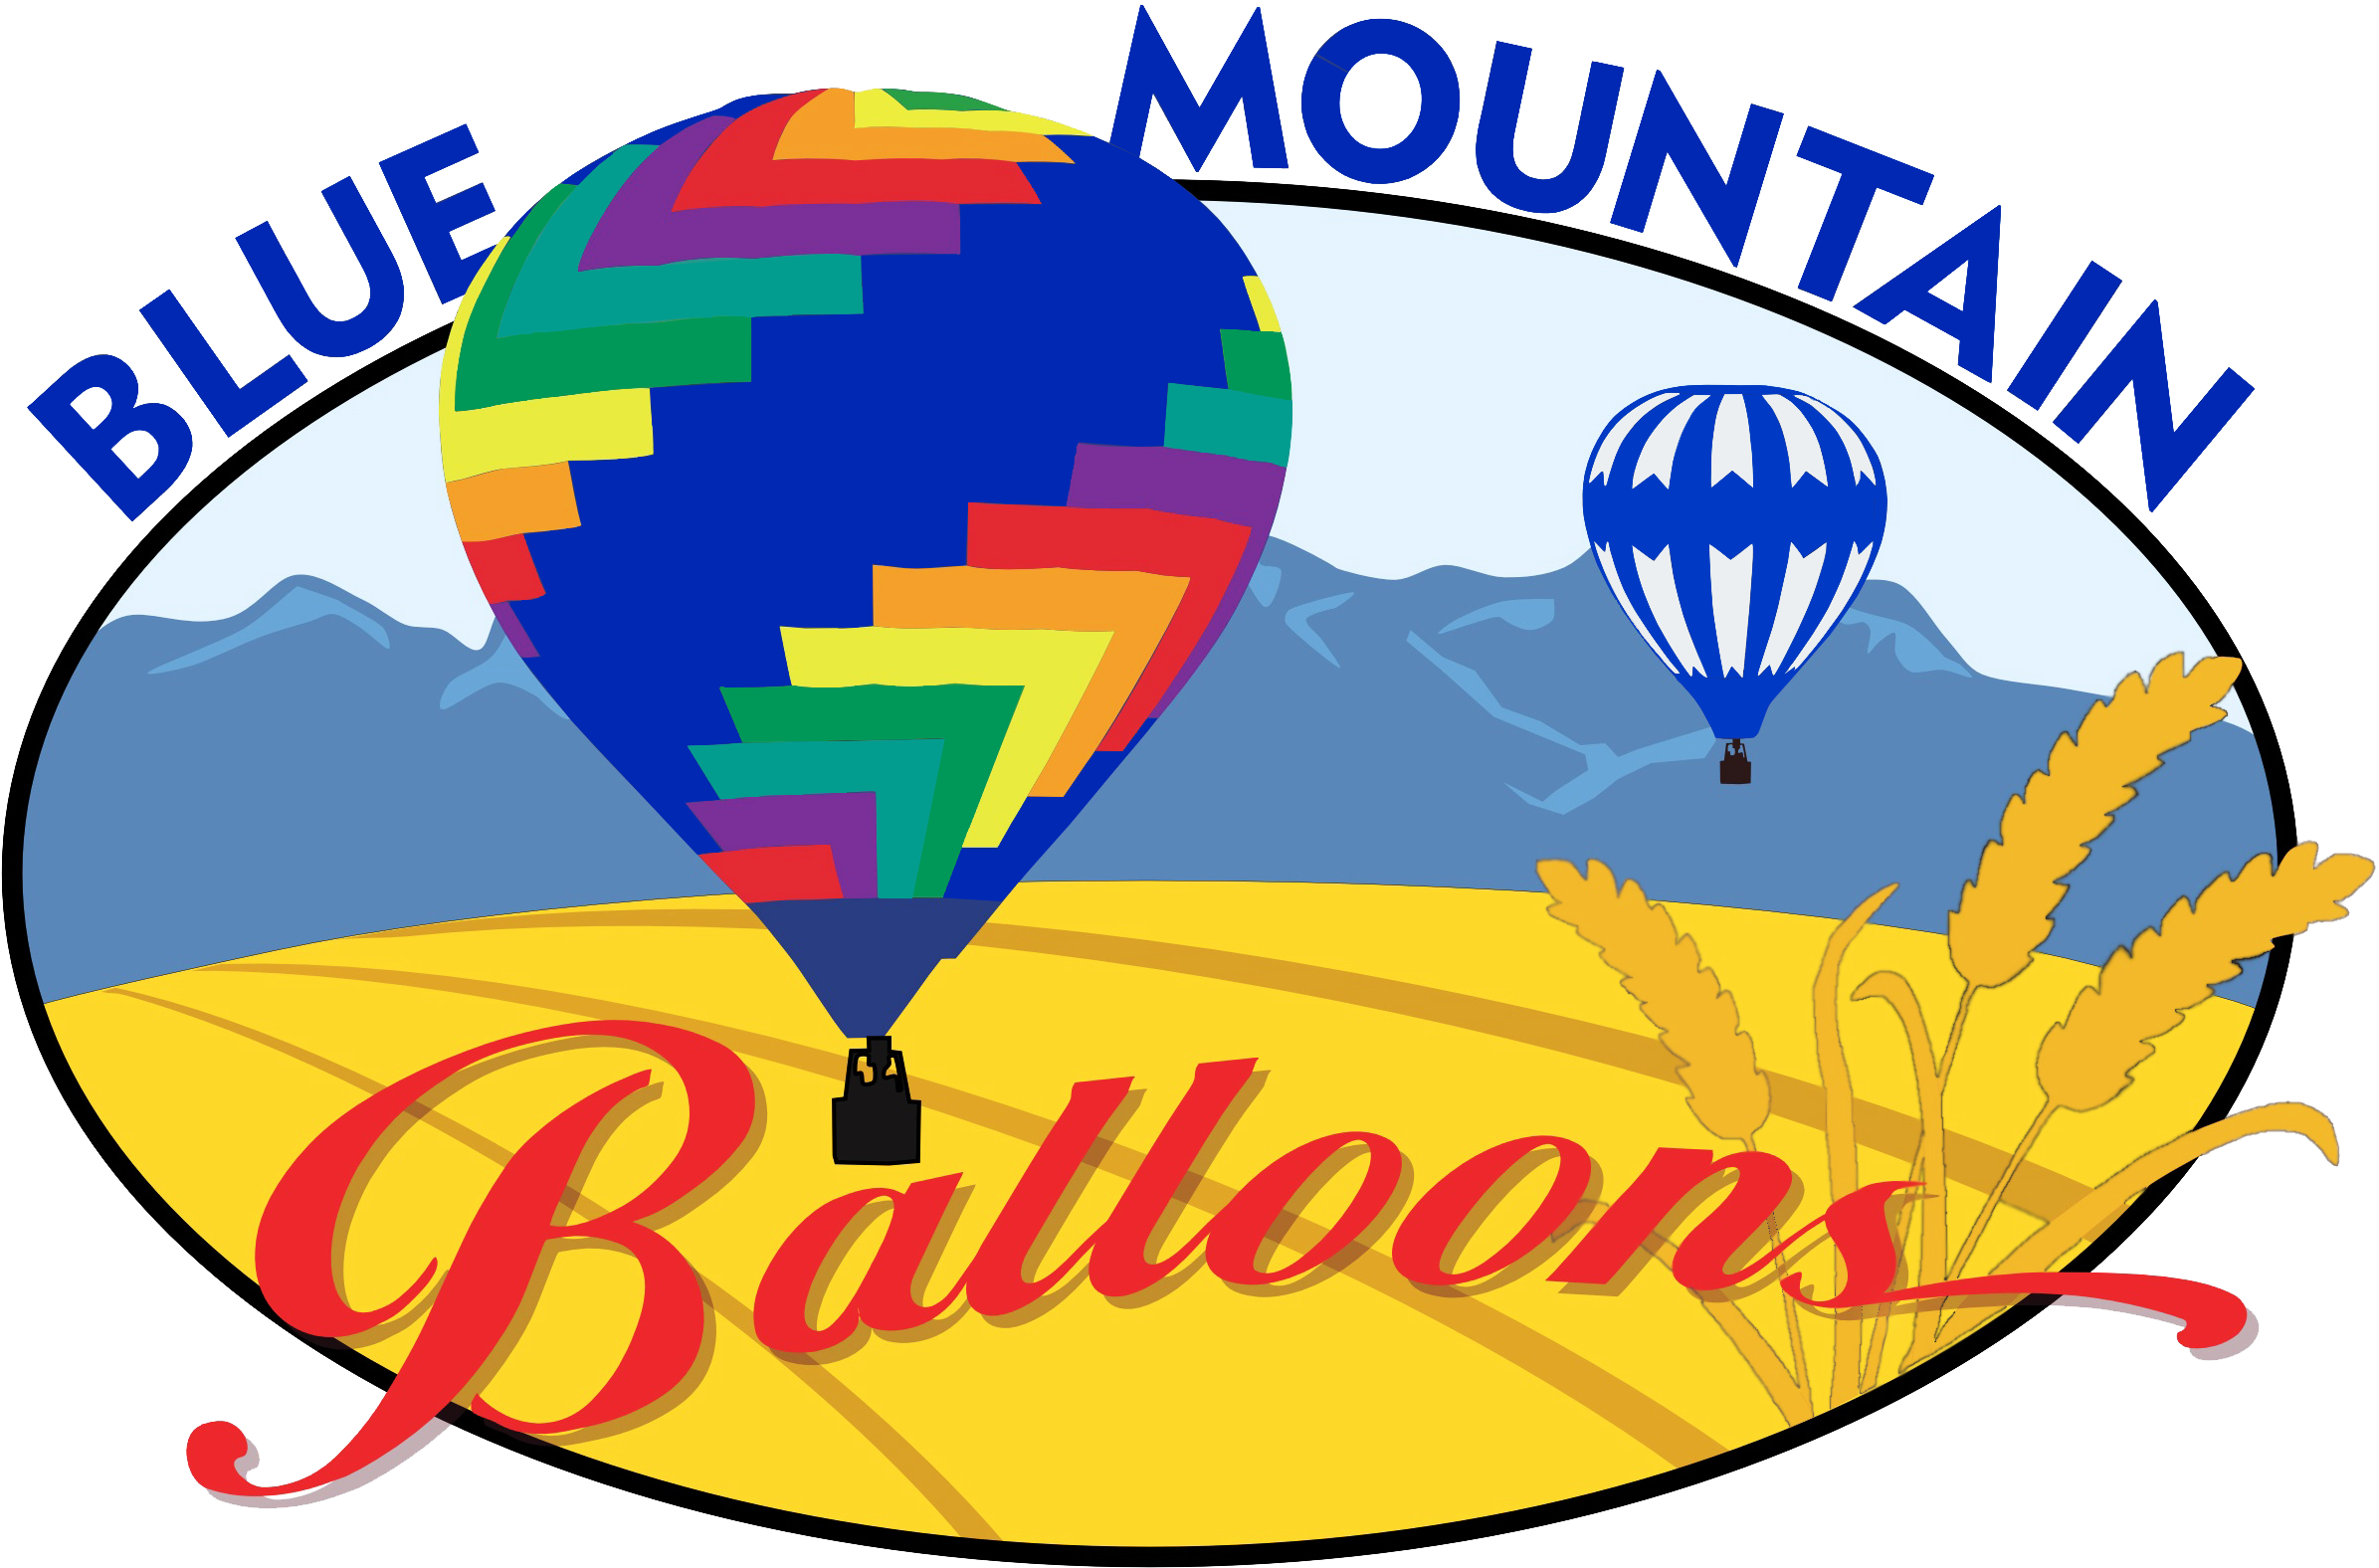 Blue Mountain Balloons - Blue Mountain Baloon Walla Walla (2418x1590)